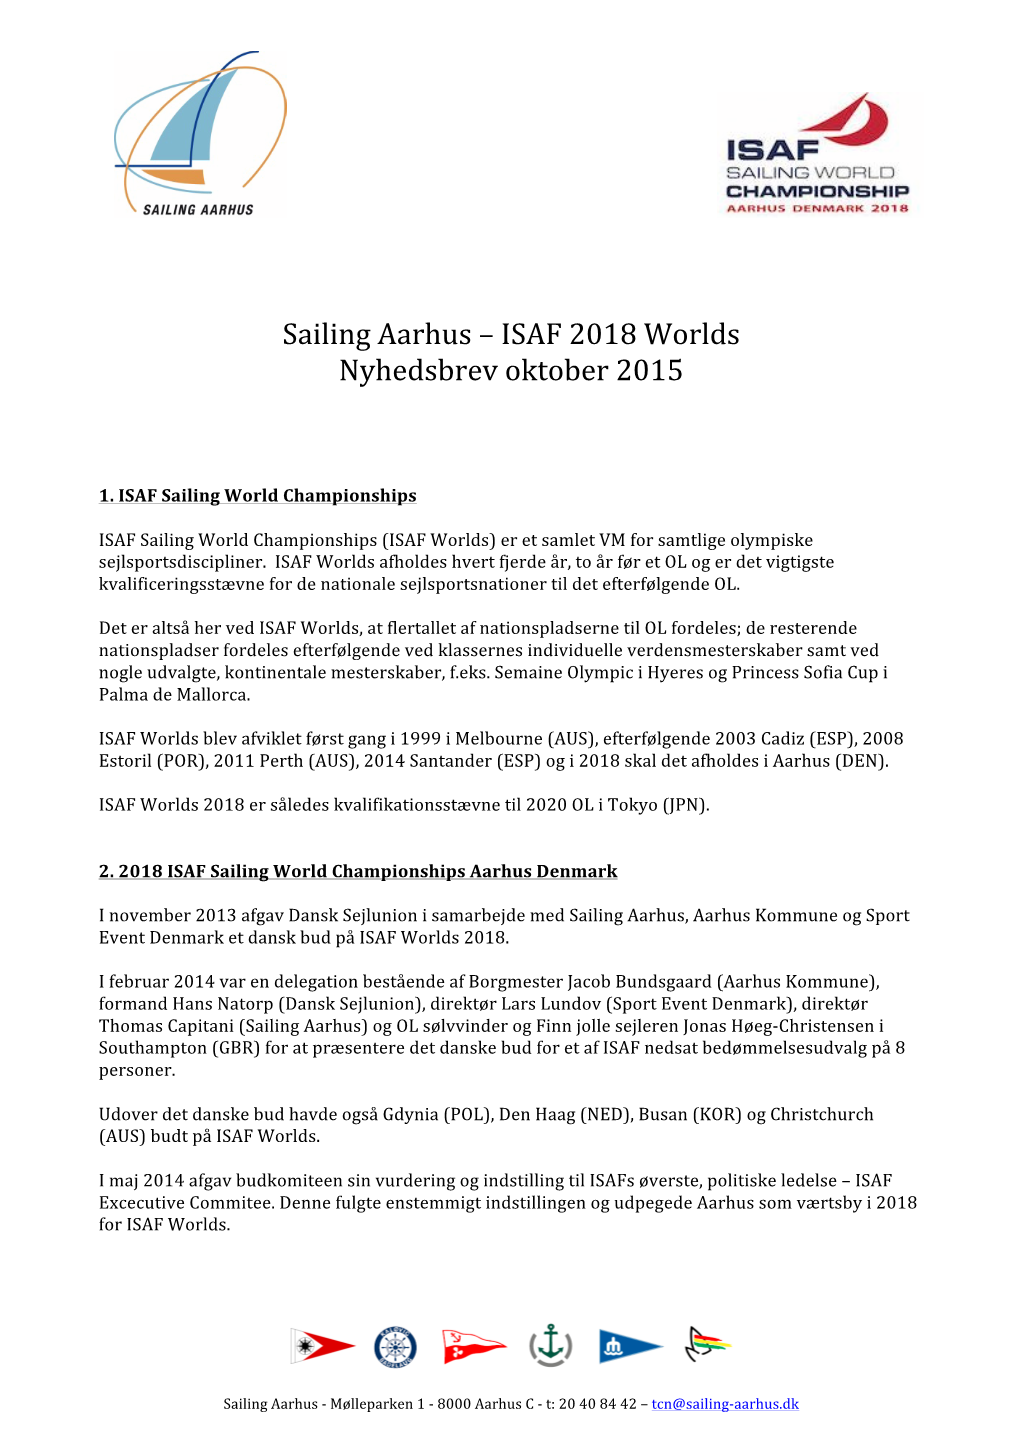 ISAF Worlds Nyhedsbrev Oktober 2015